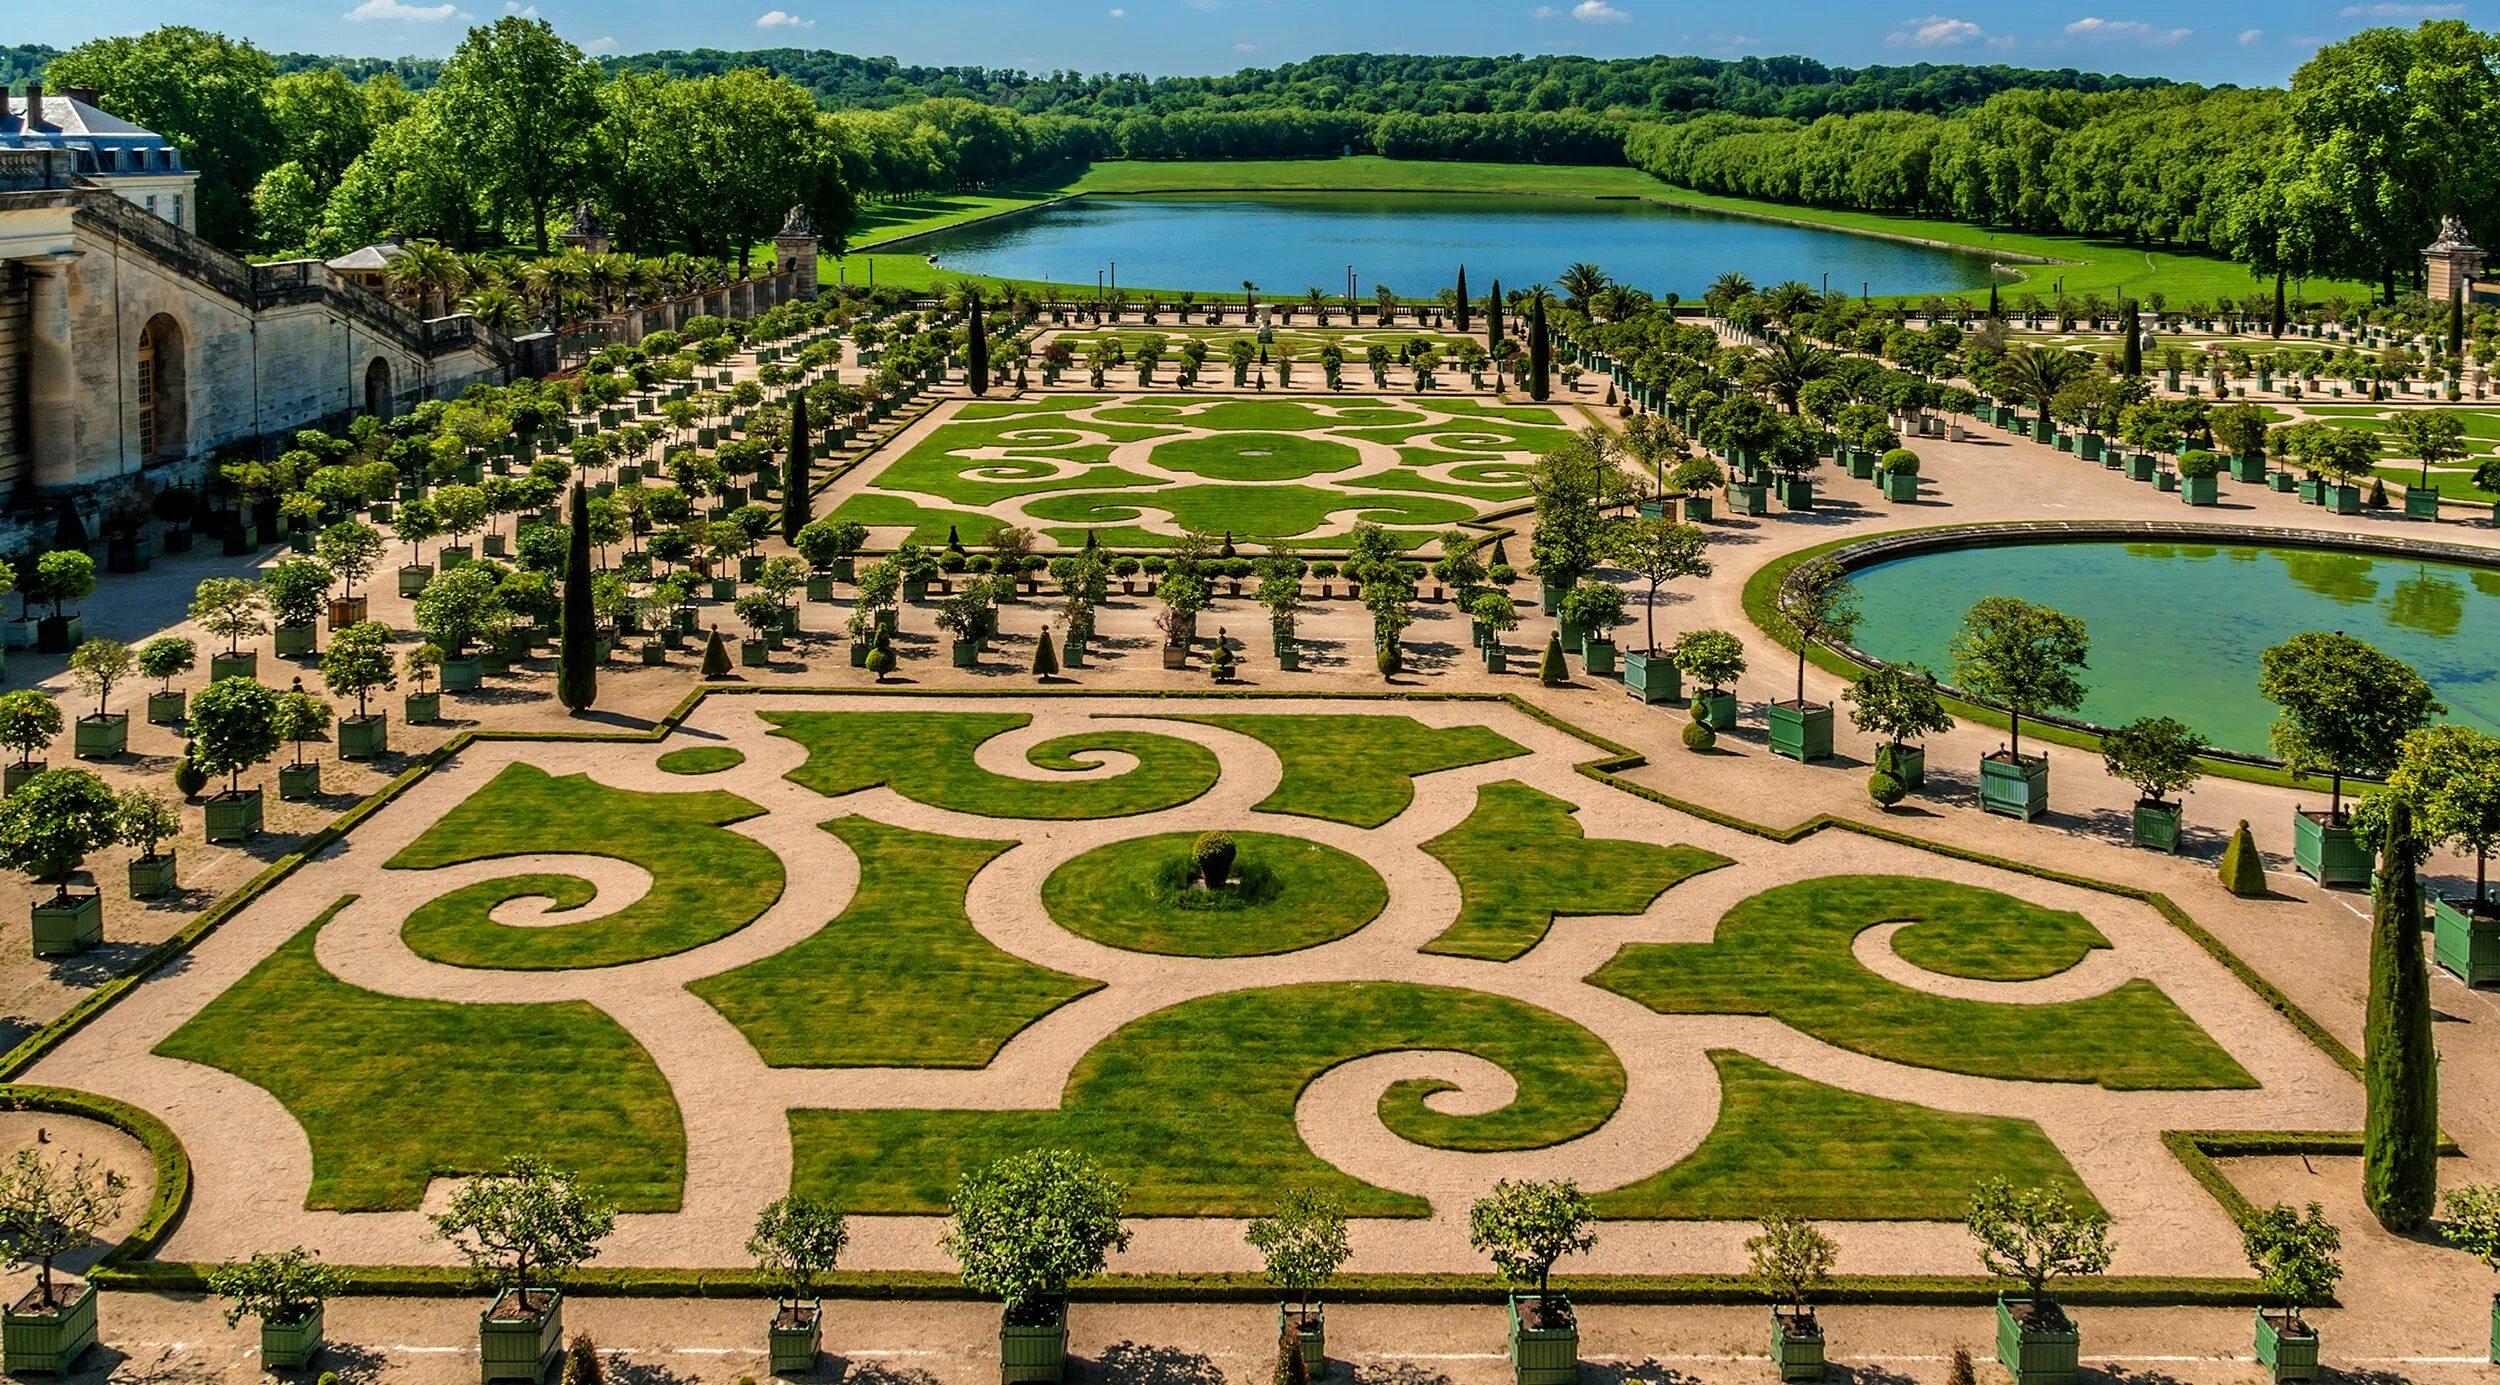 Де версаль. Версаль французский сад партер. Версальский дворец и парк. Садовый партер Версальского дворца. Версальский дворец и парк во Франции.